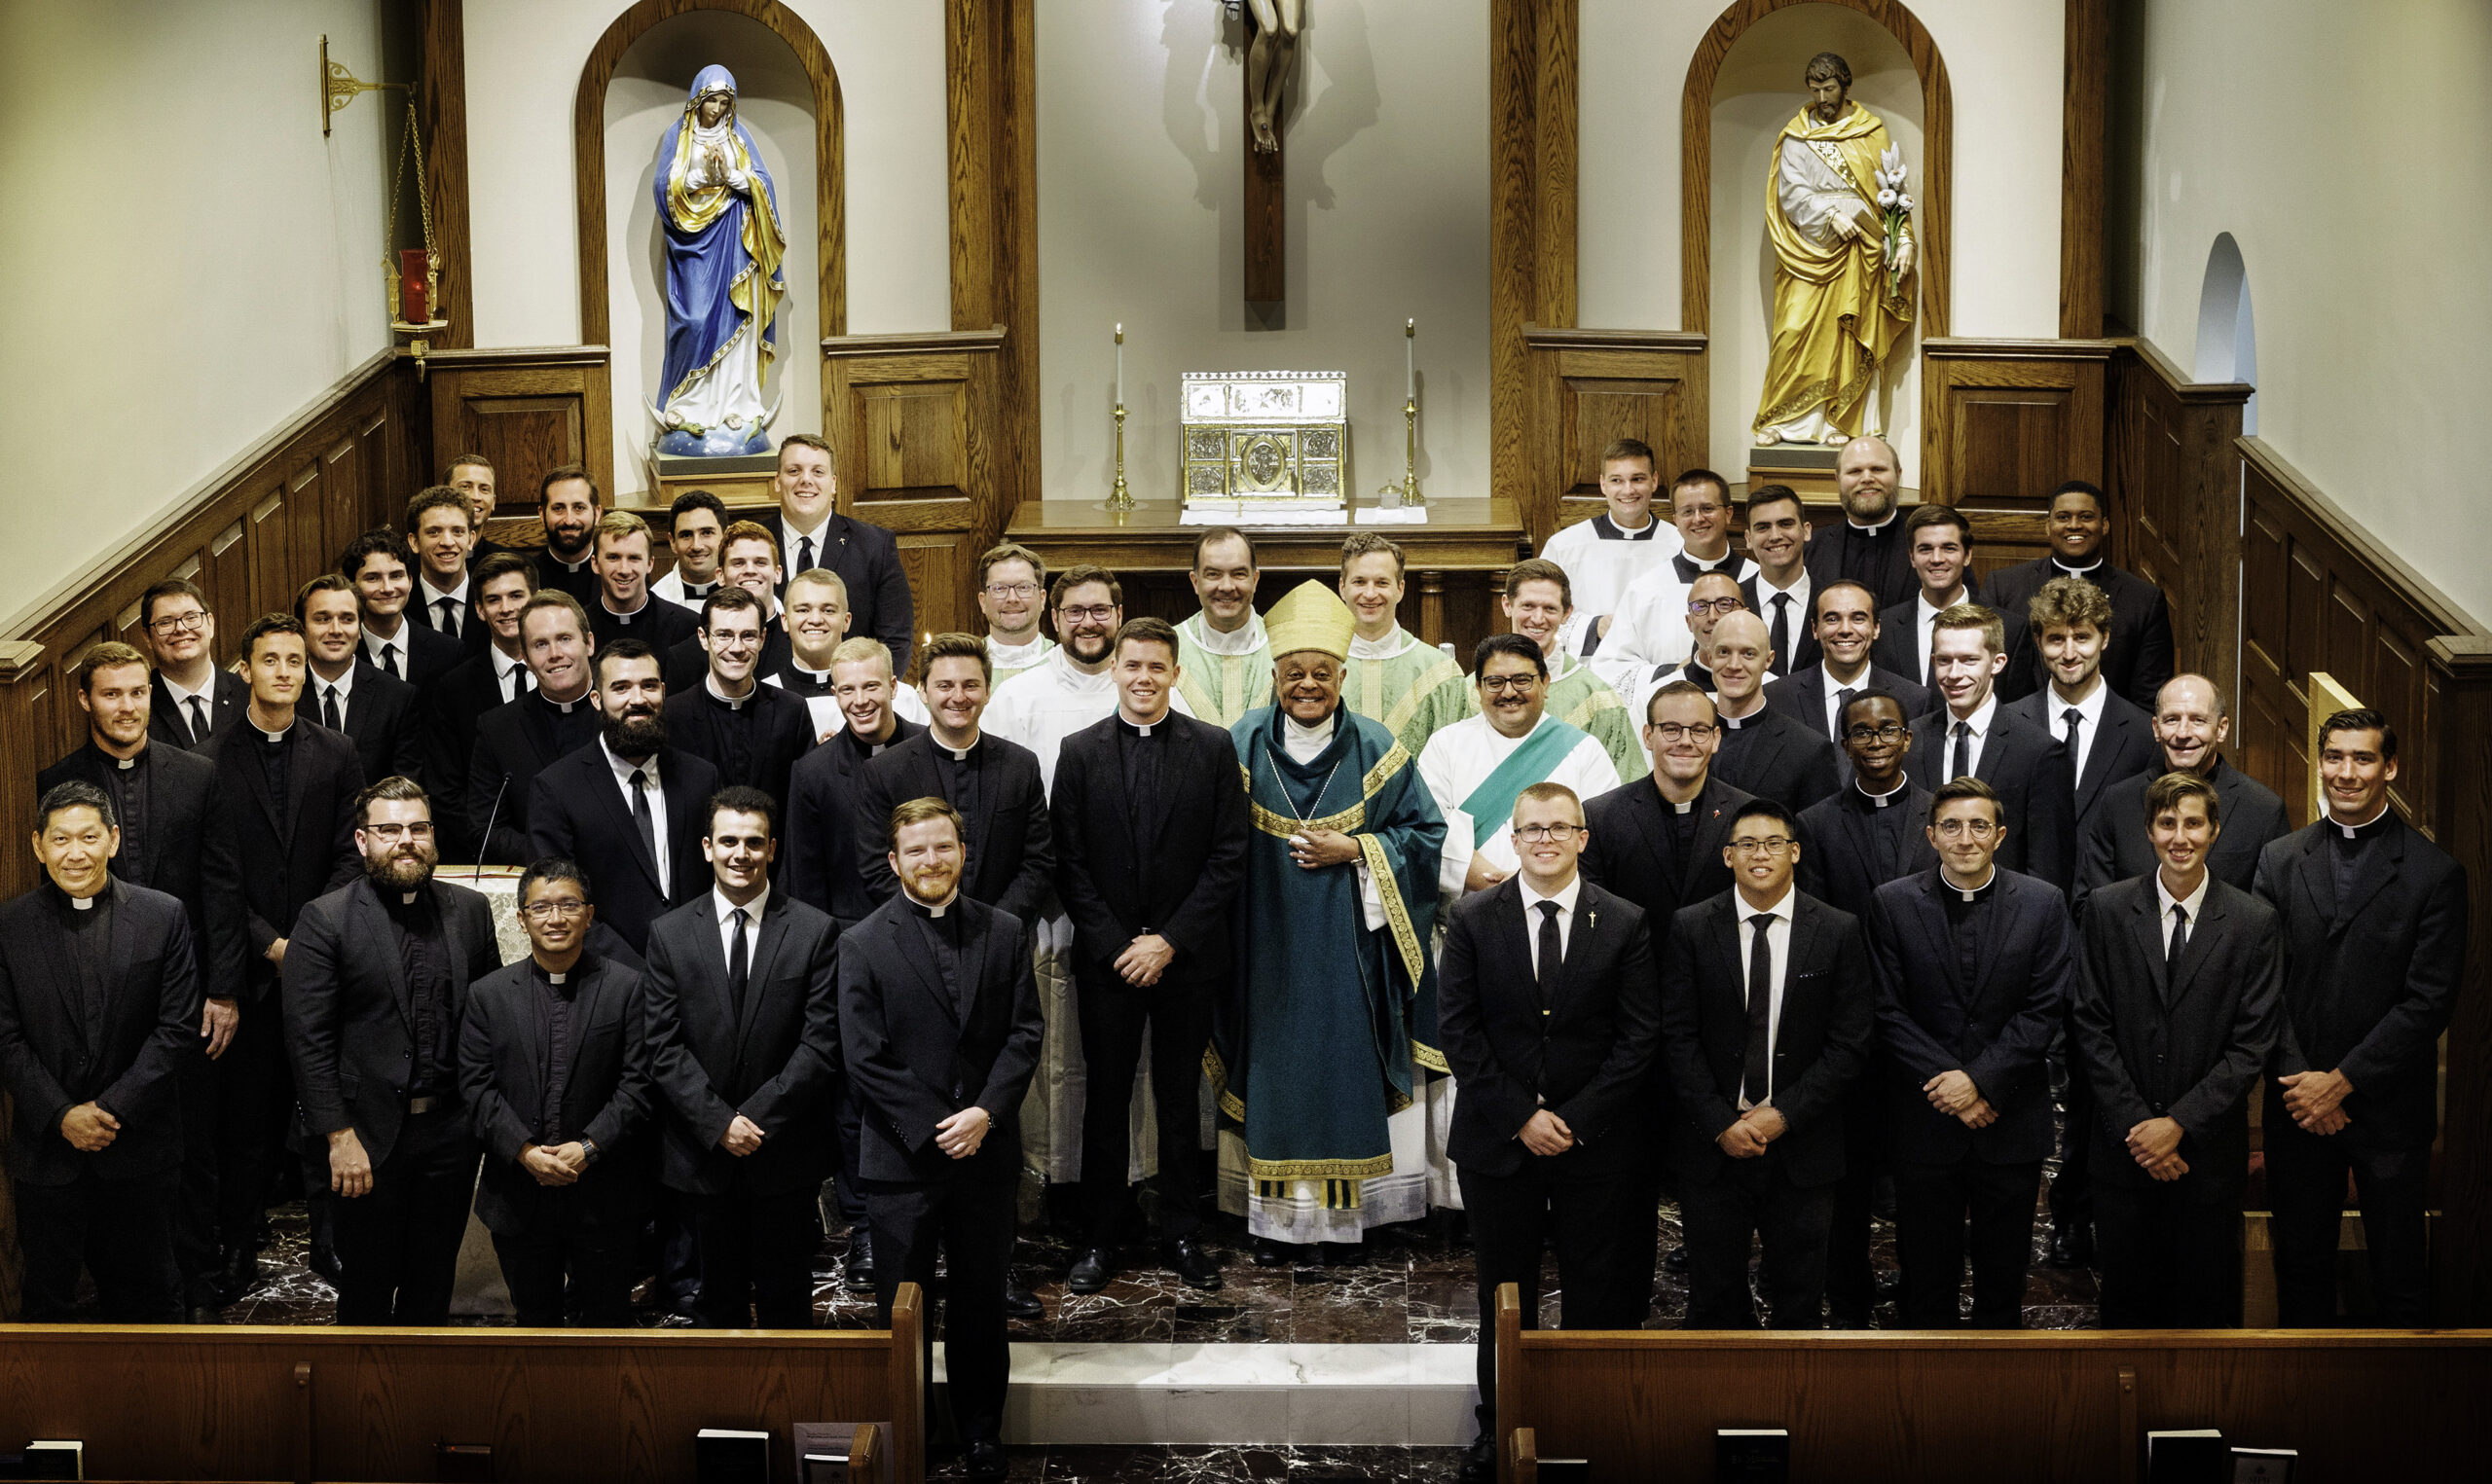 JPII Seminary seminarians group photo